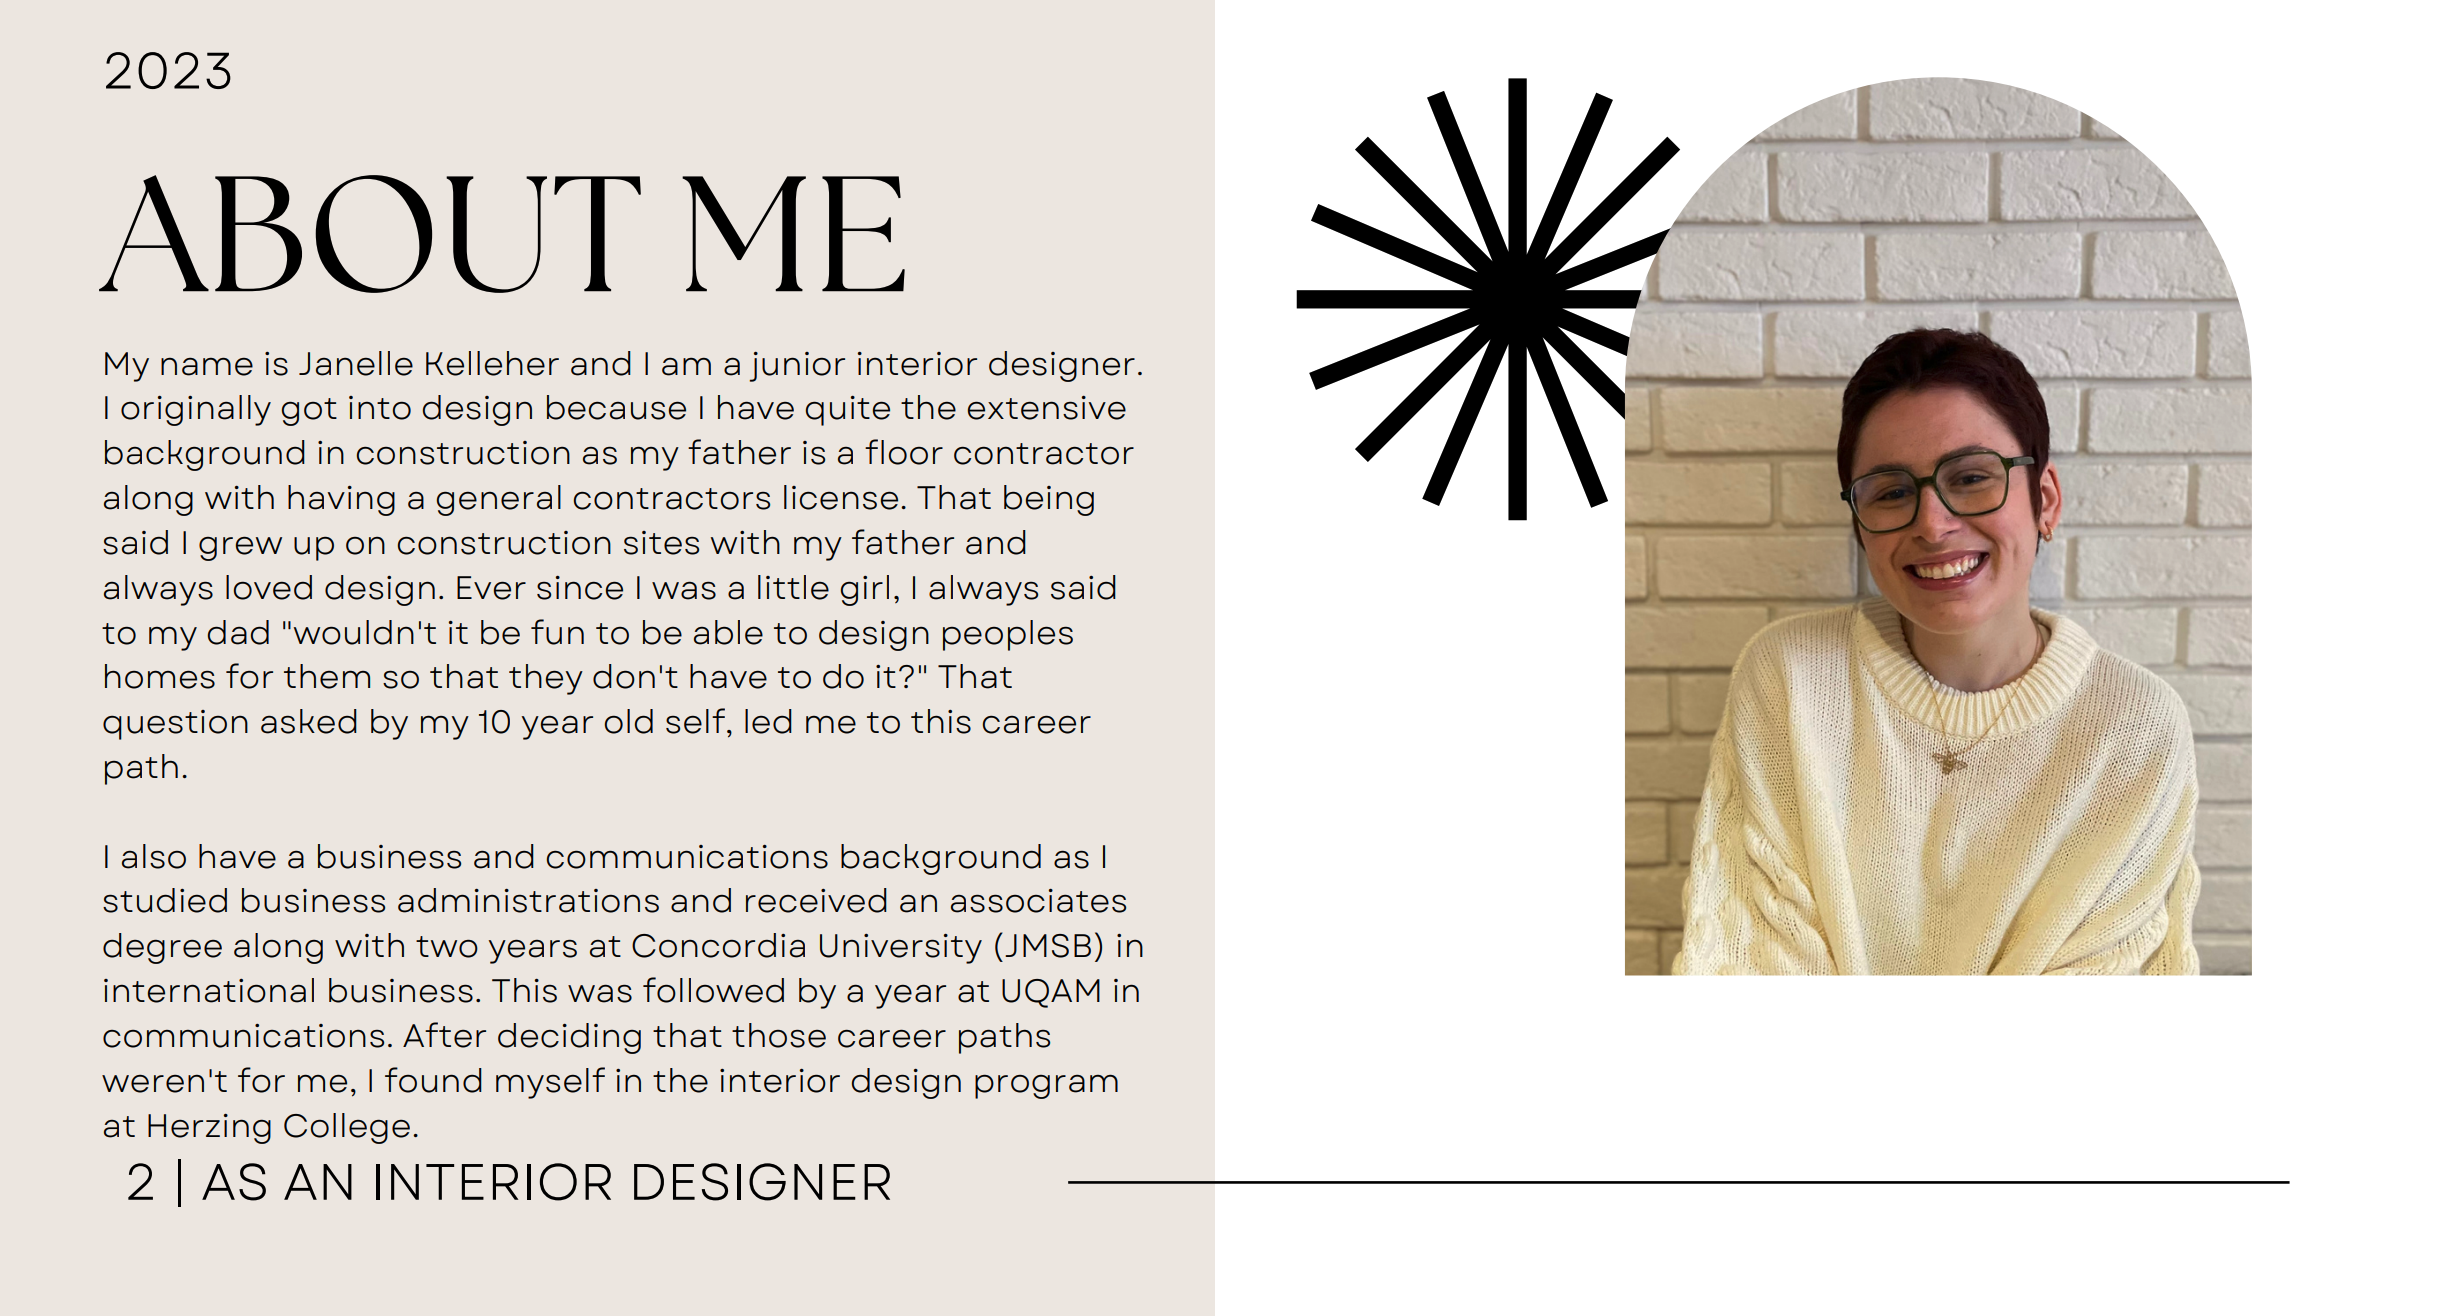 Page « à propos de moi » d’un portfolio de design d’intérieur